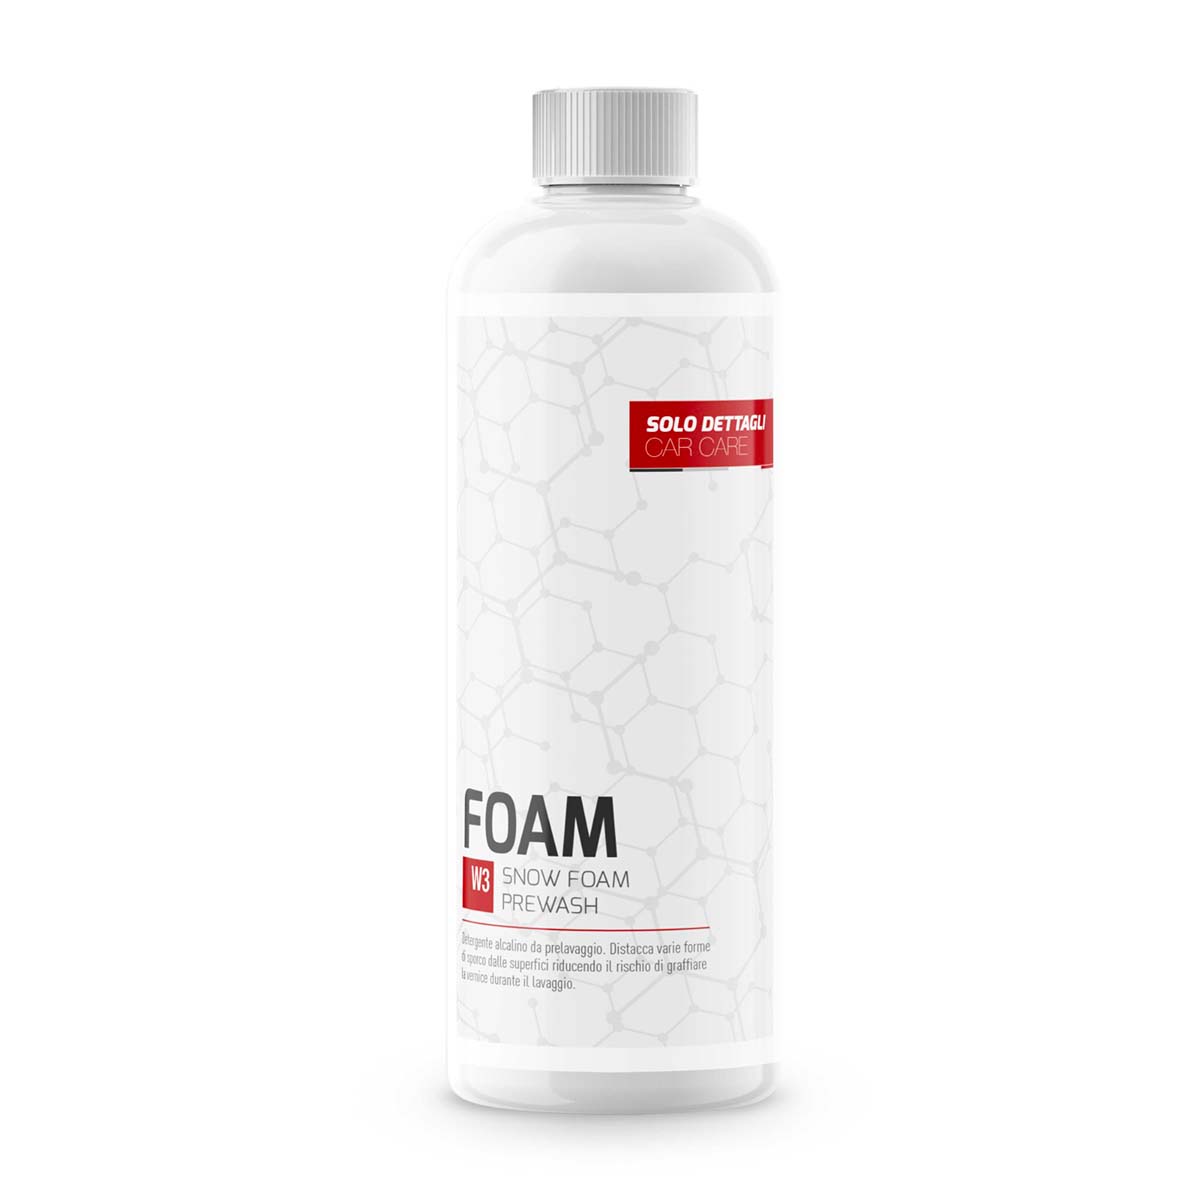 SD Foam - Snow Foam Prewash - Prelavaggio Alcalino Schiumogeno